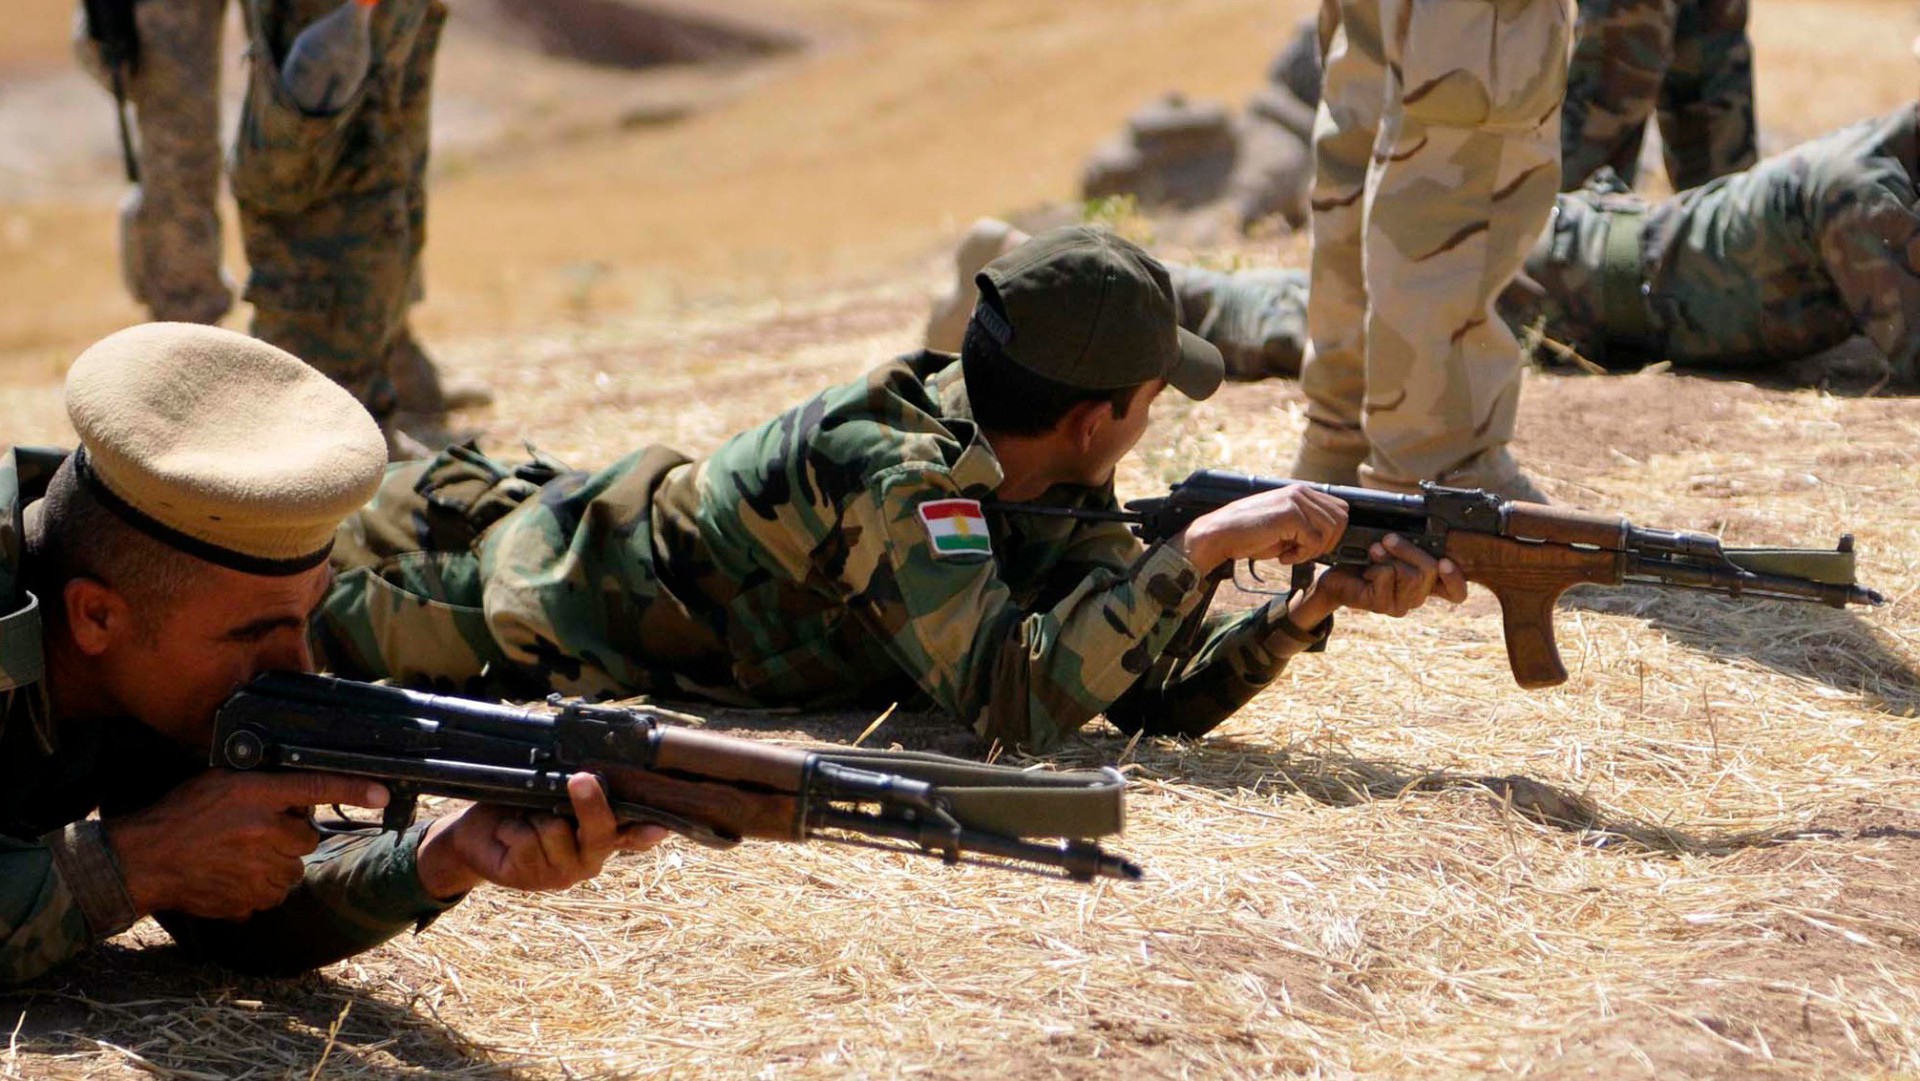 Les forces séparatistes kurdes sont la cible de l'armée turque (Photo: US forces in Iraq/Flickr/CC BY-NC-ND 2.0)